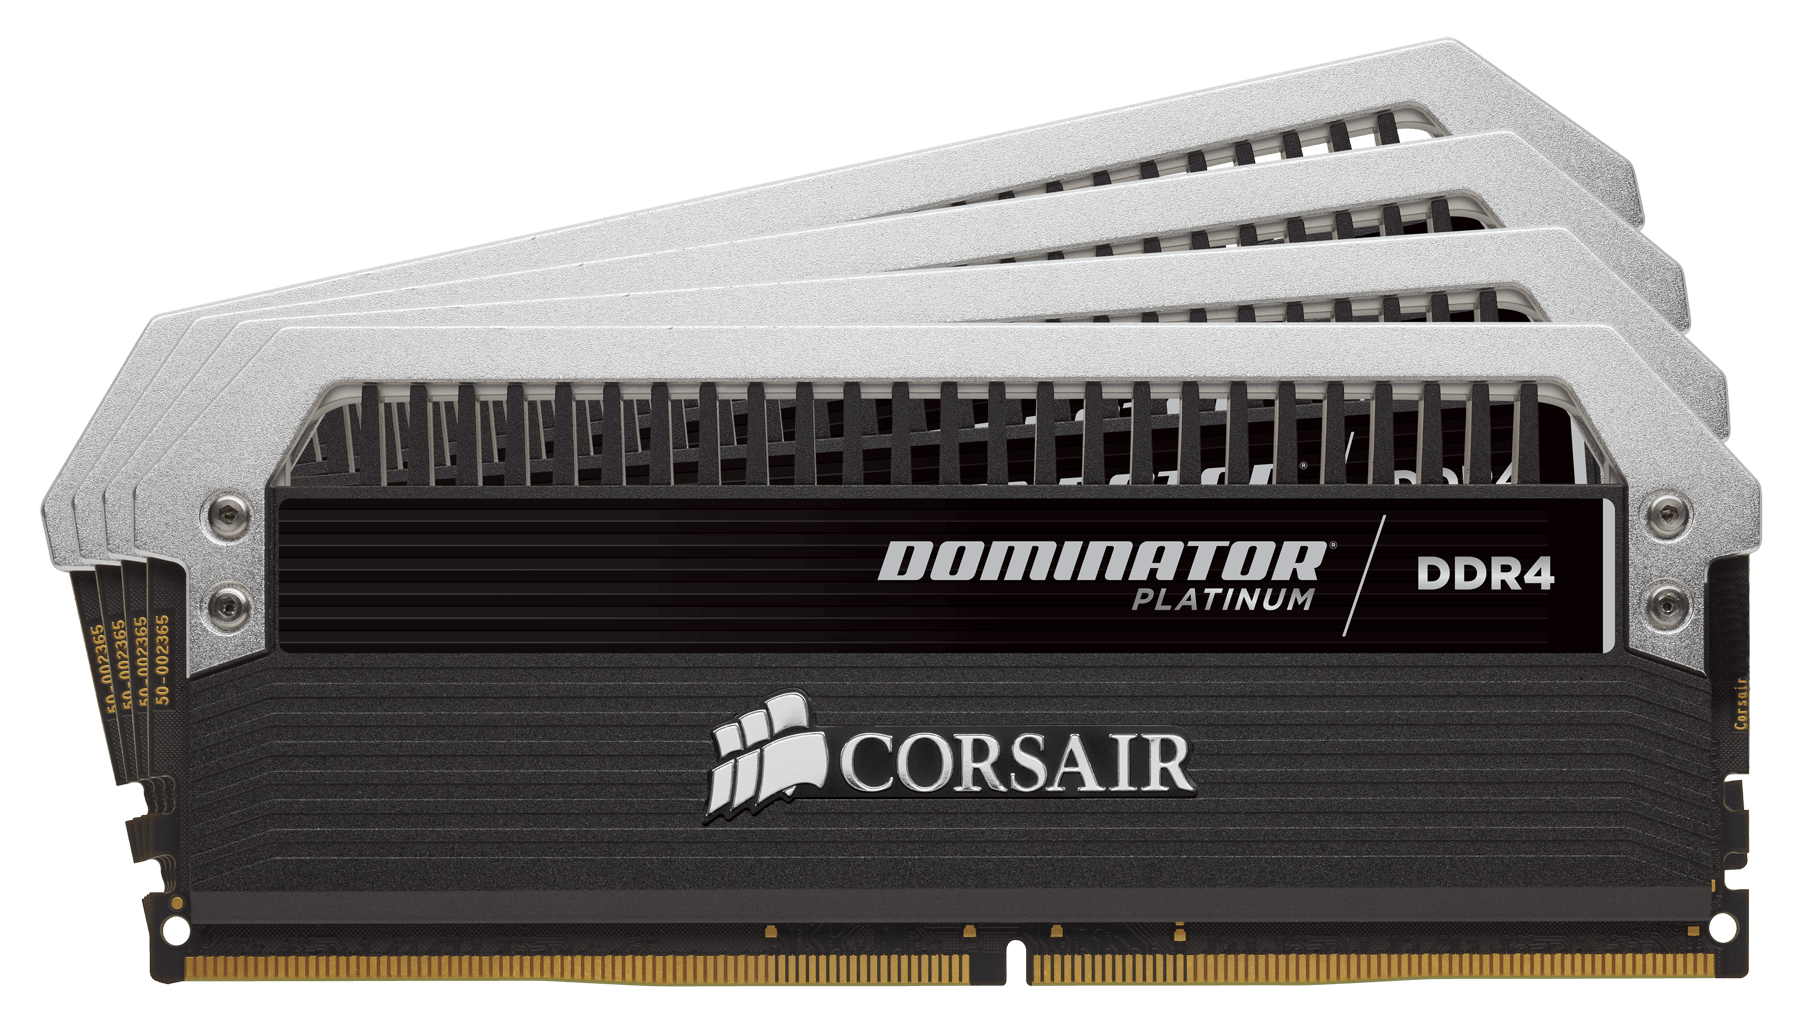 RGB Fan for Corsair Dominator Platinum DDR4 $70 MSRP